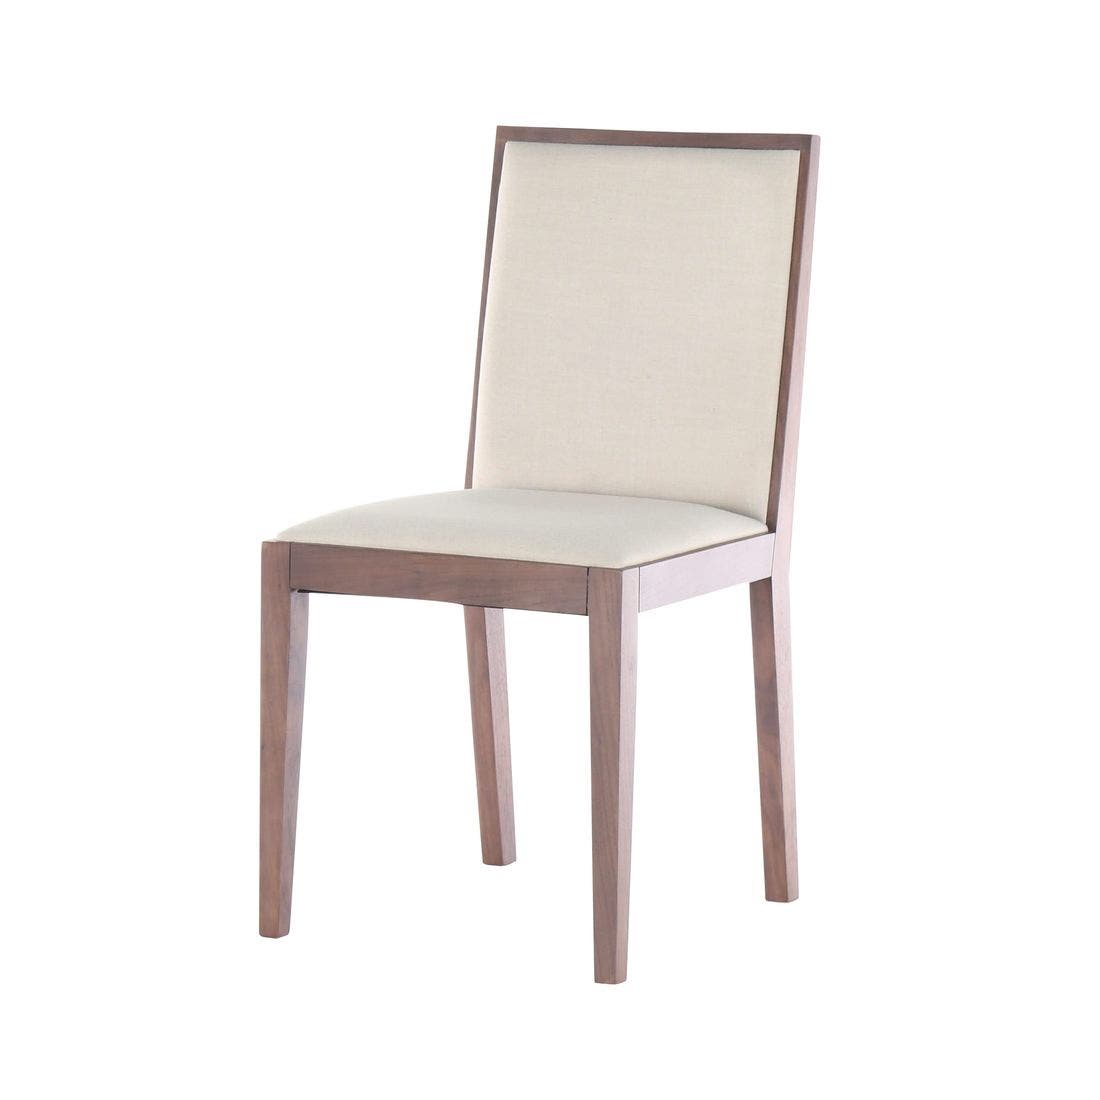 เก้าอี้ รุ่น Waolin สีไม้เข้ม-02